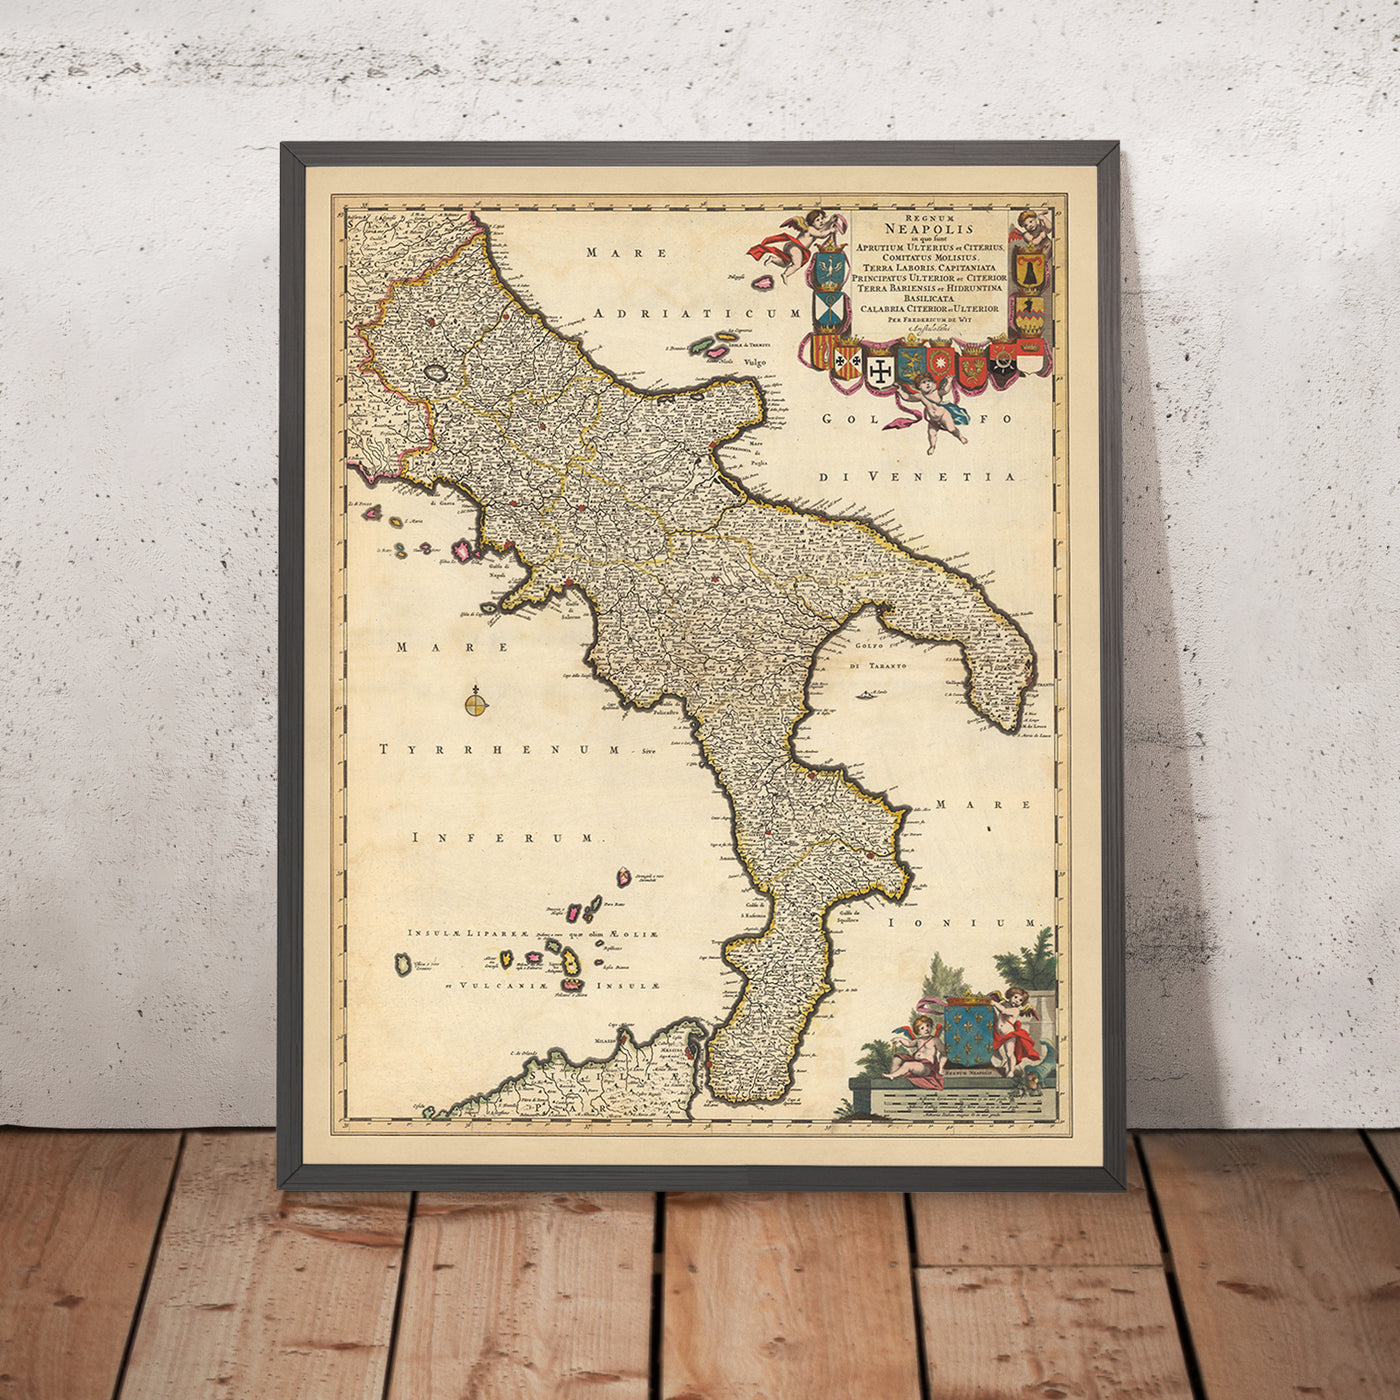 Alte Karte des Königreichs Neapel von Visscher, 1690: Neapel, Bari, Messina, Salerno, Parco Nazionale del Gargano